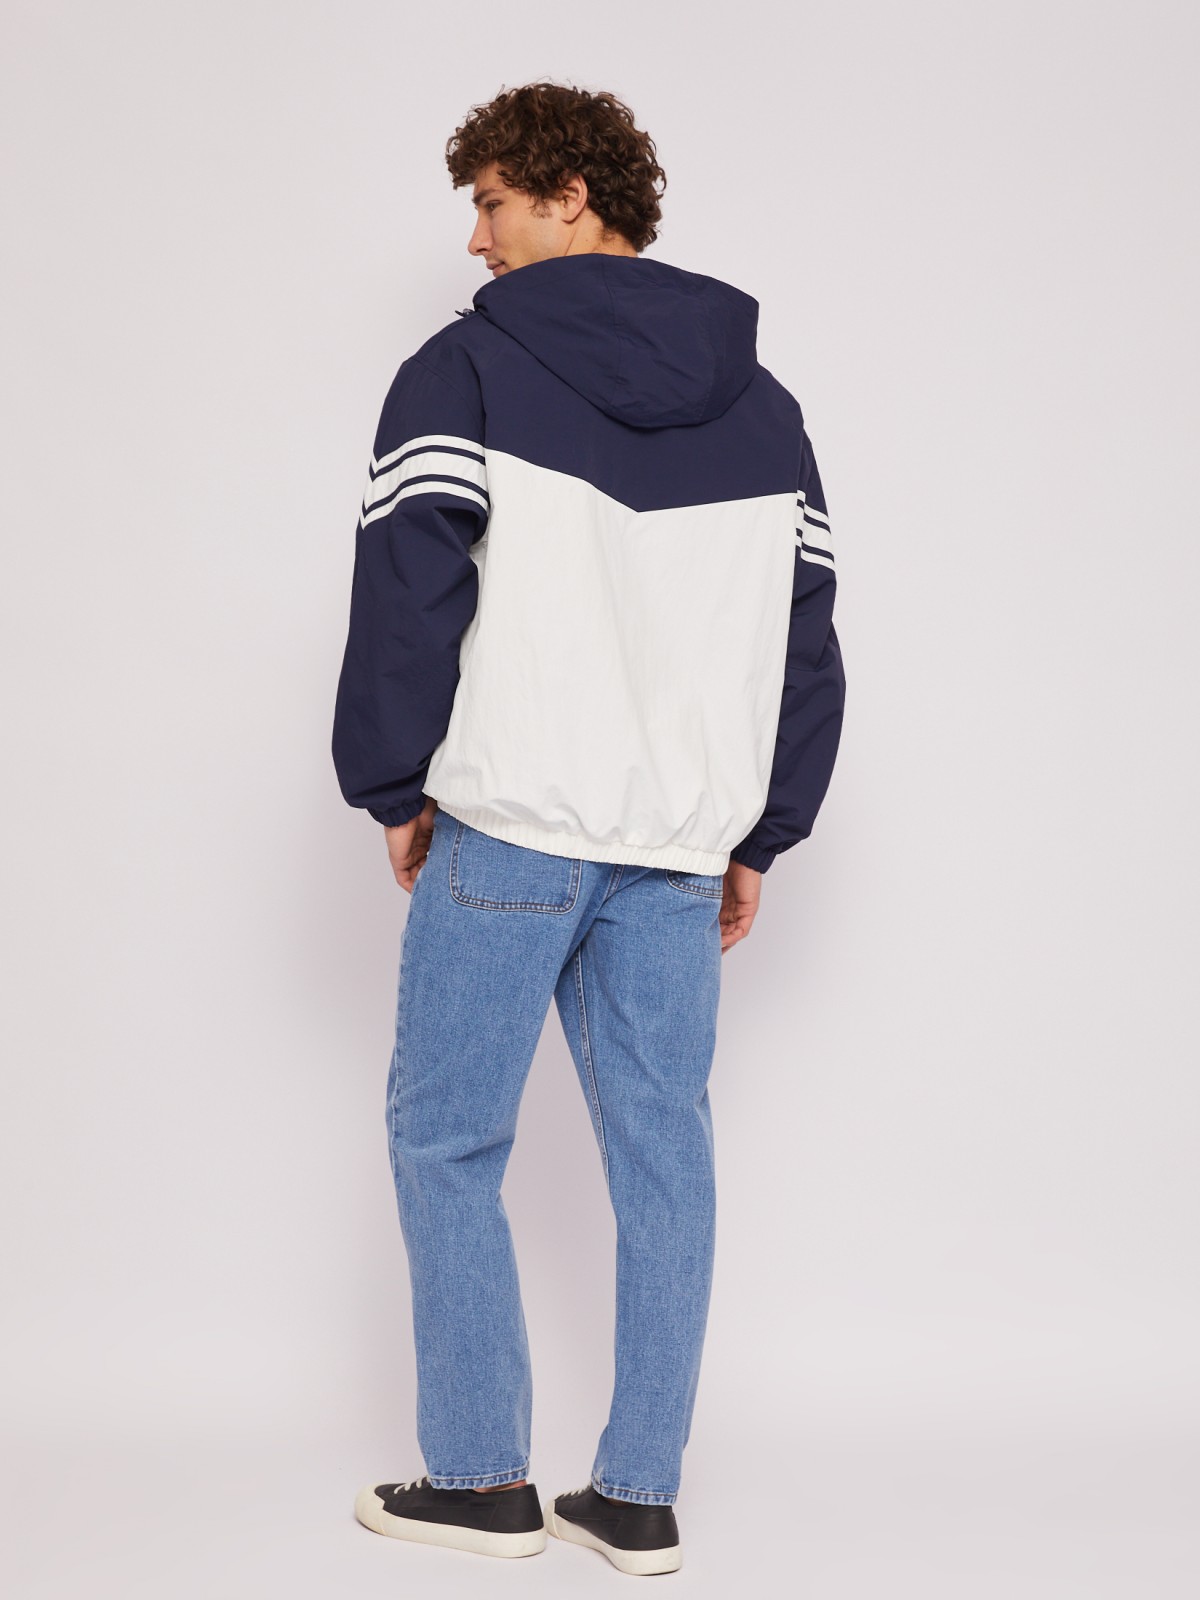 Куртка-ветровка с капюшоном в спортивном стиле zolla 014215650064, цвет синий, размер XL - фото 6